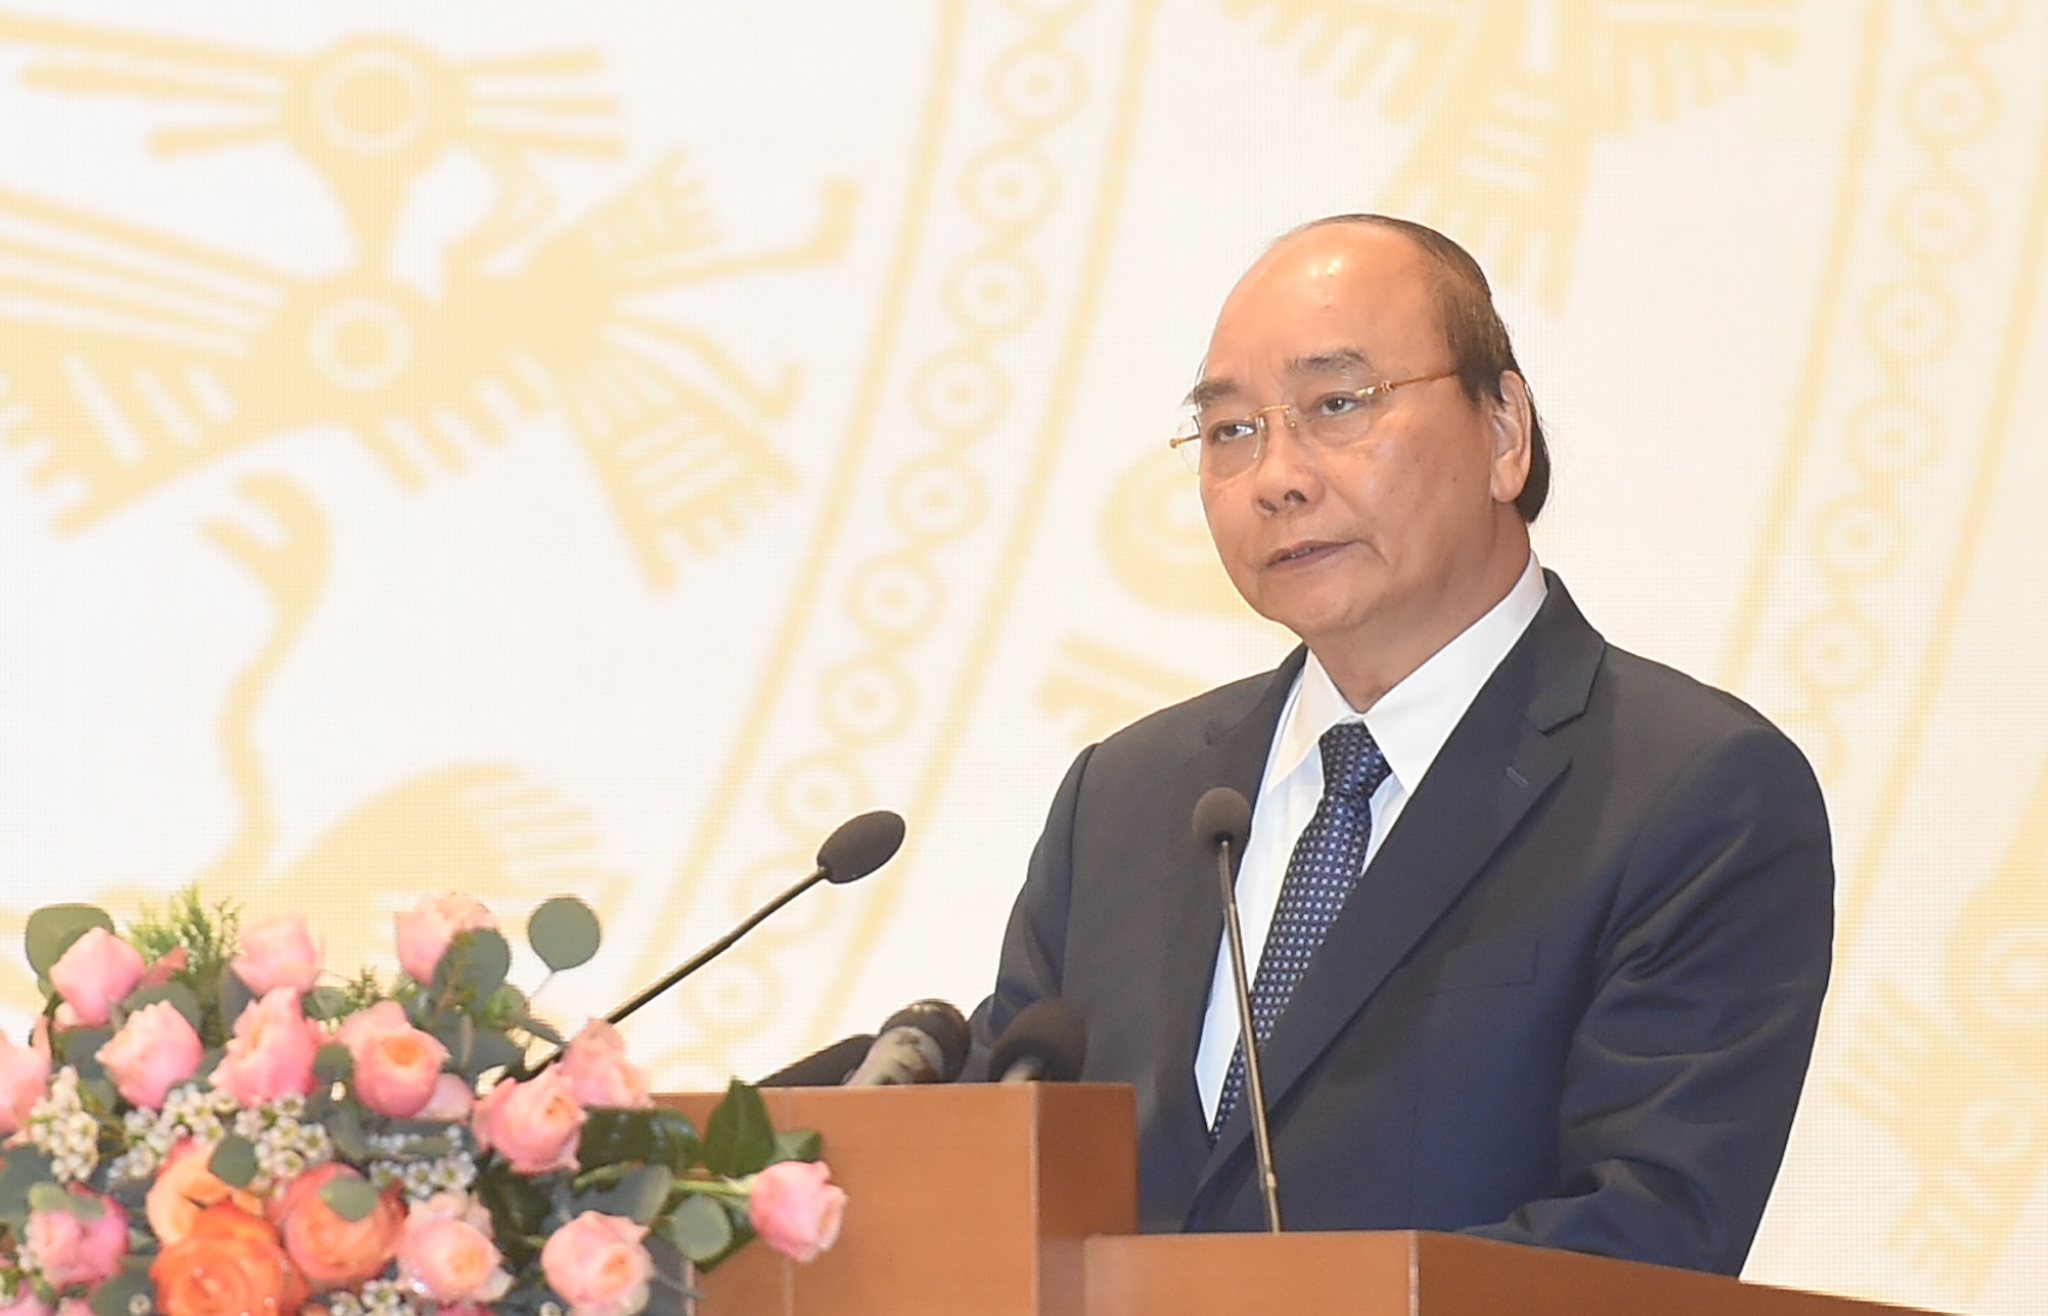 Thủ tướng Nguyễn Xuân Phúc: Phải cải cách mạnh mẽ hơn để đất nước tiến lên